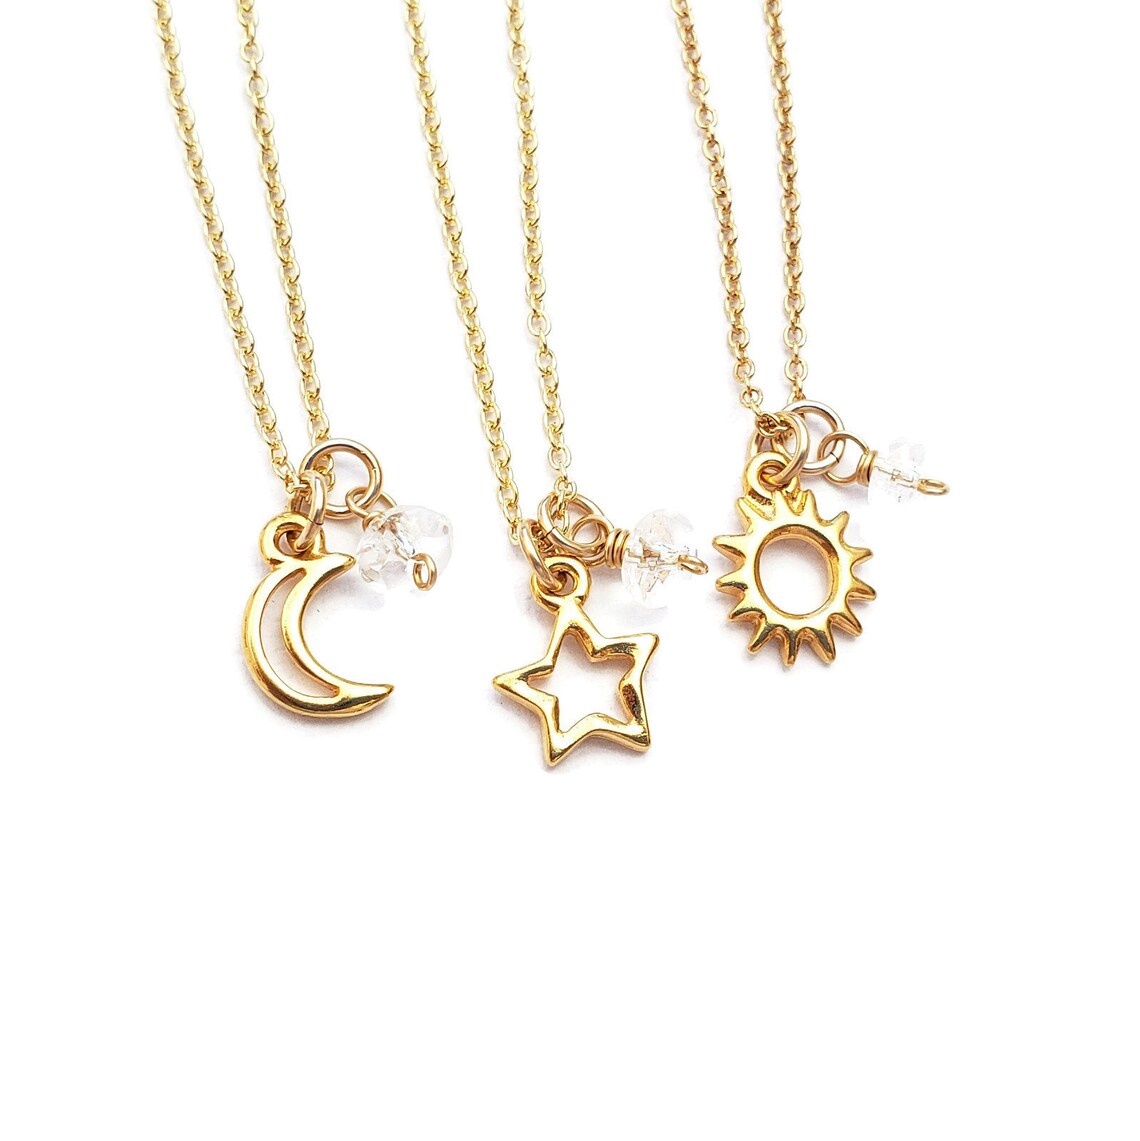 Best friend sun moon star necklaces 3 best friend necklace set | Etsy